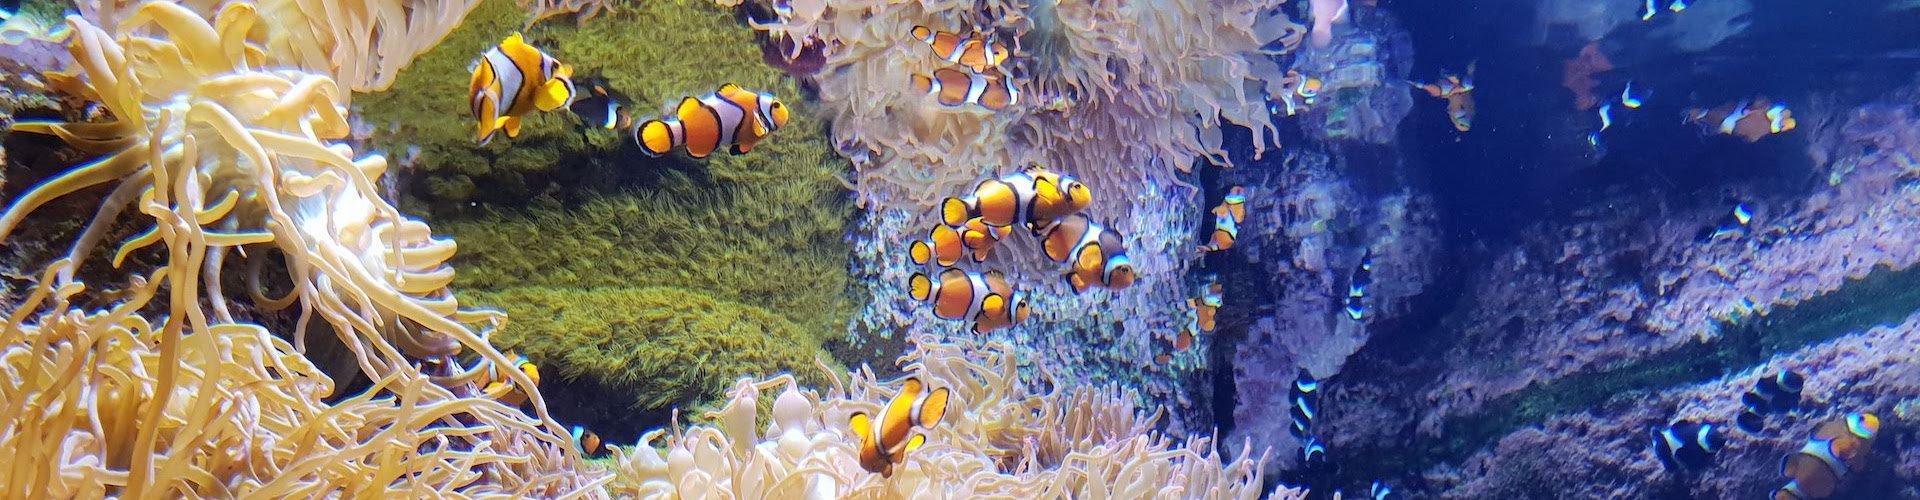 Ausflugsziel Poema del Mar Aquarium